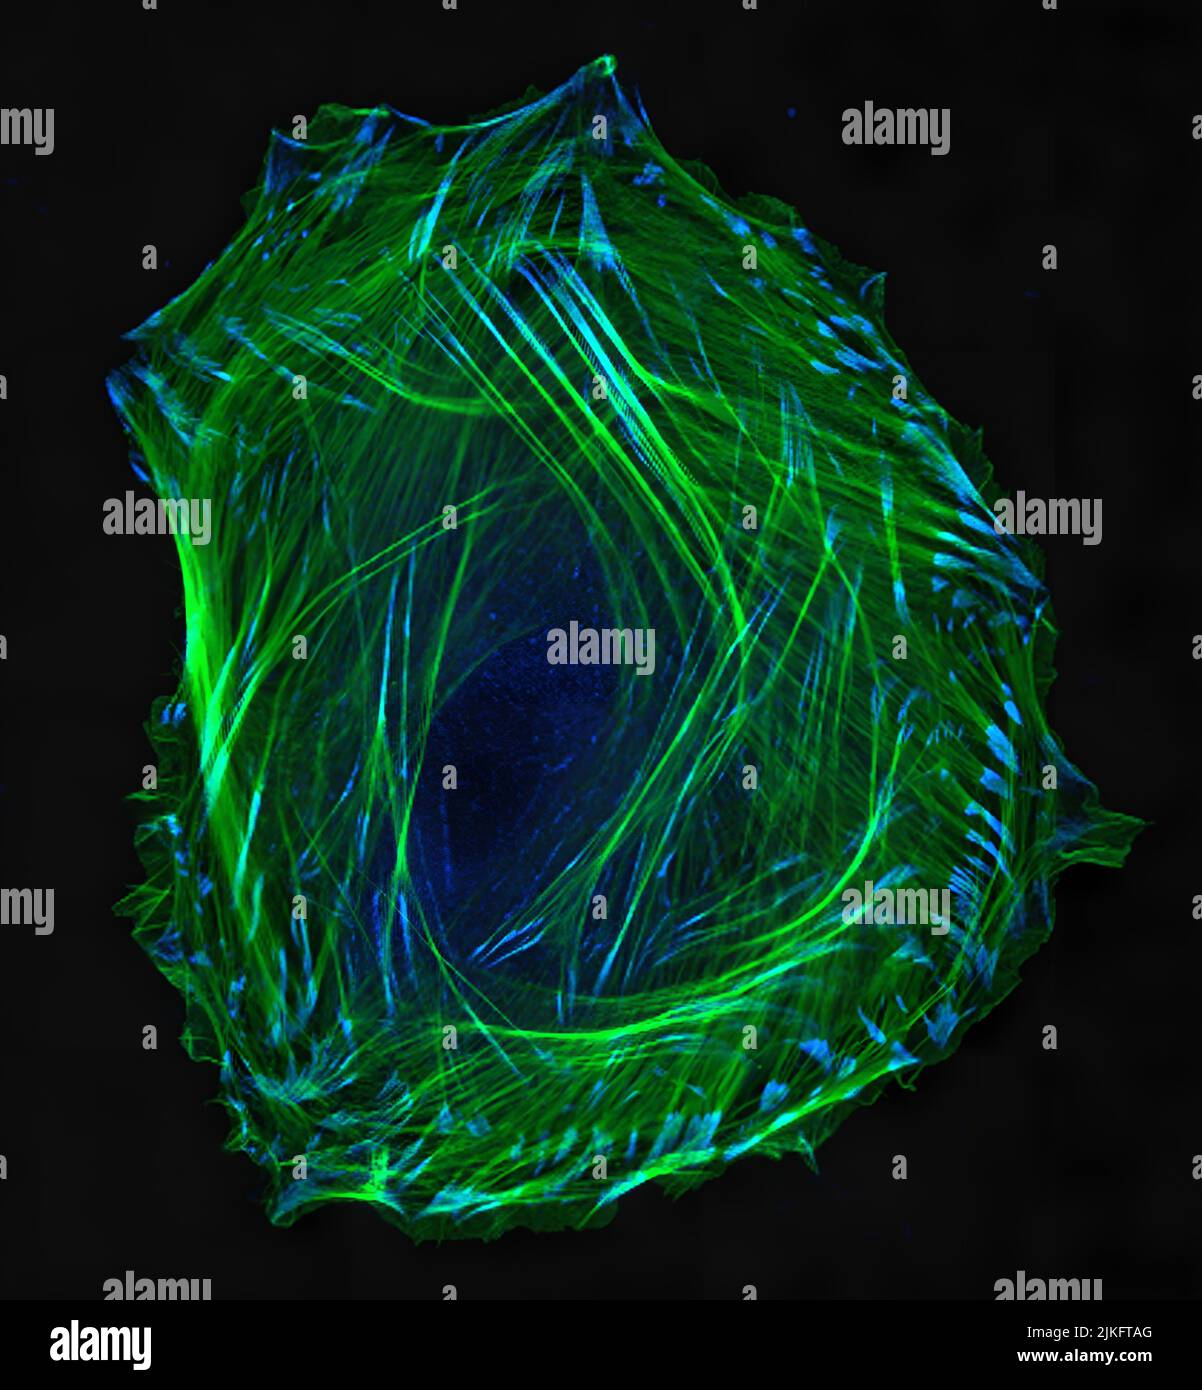 Cellule muscolari lisce embrionali. Citoscheletro di actina marcato con immunofluorescenza (verde) e vinculina nelle adesioni cellulari (blu). Microscopia a scansione laser confocale. Foto Stock